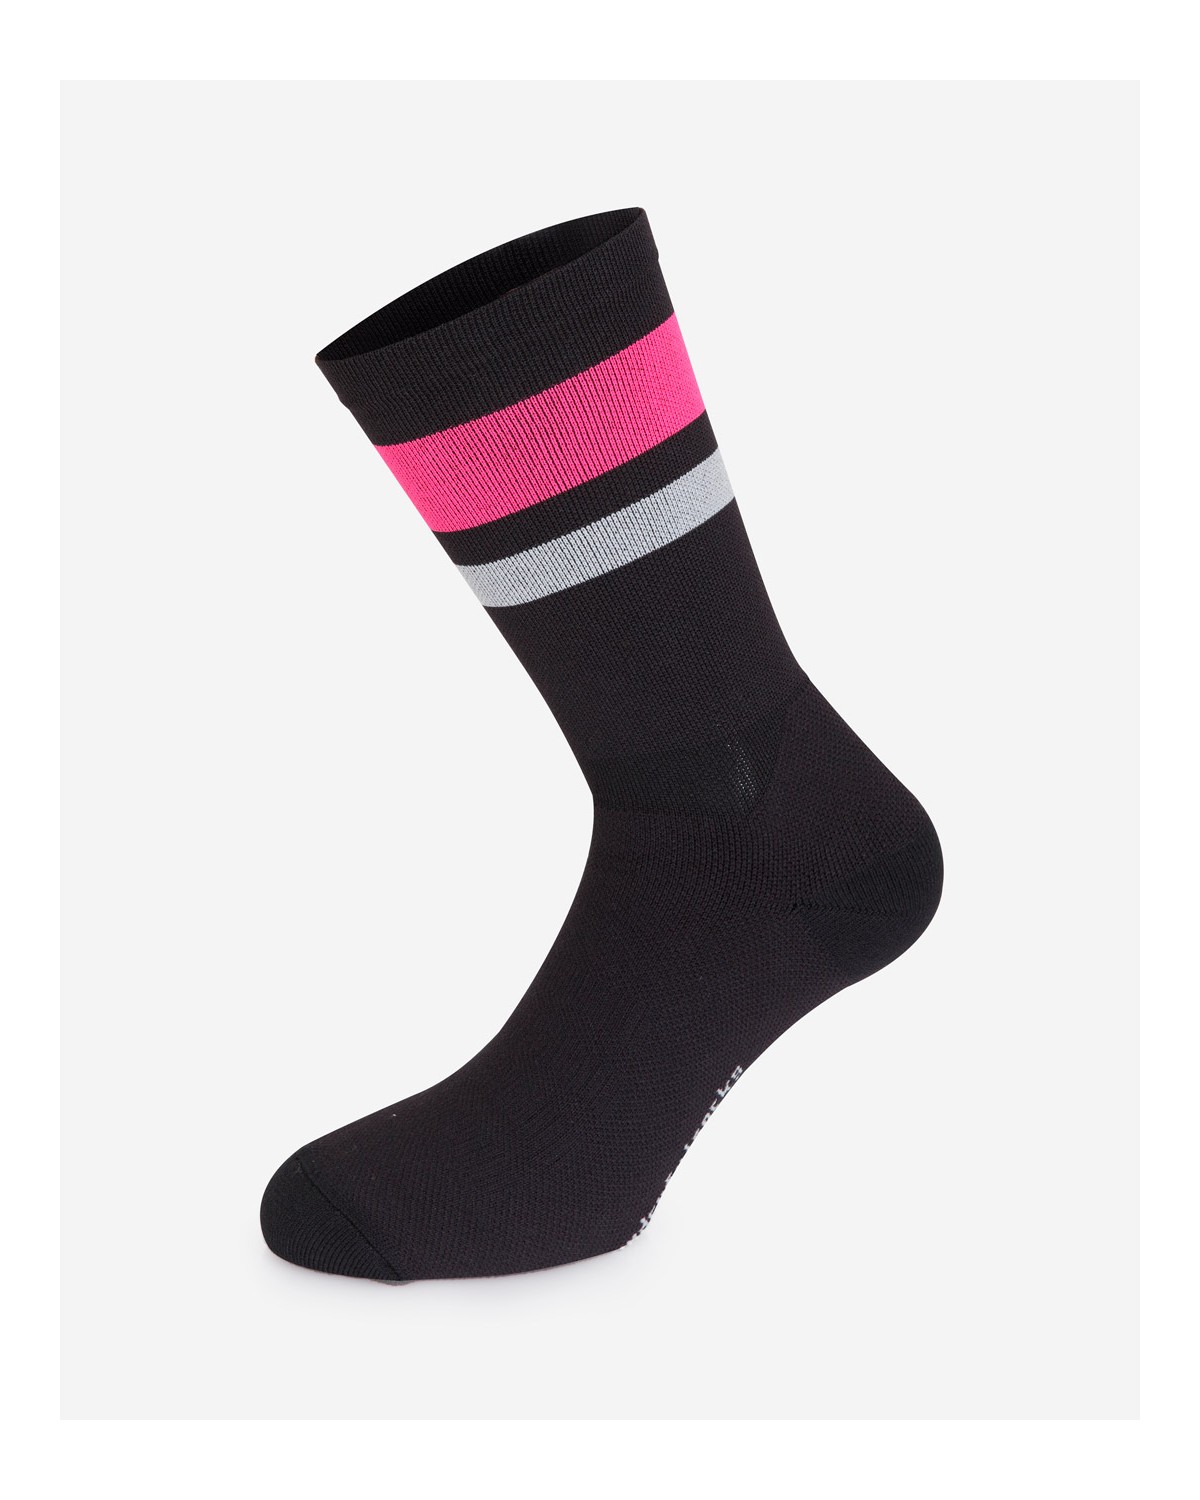 The Wonderful Socks Winter Radsocken schwarz/pink